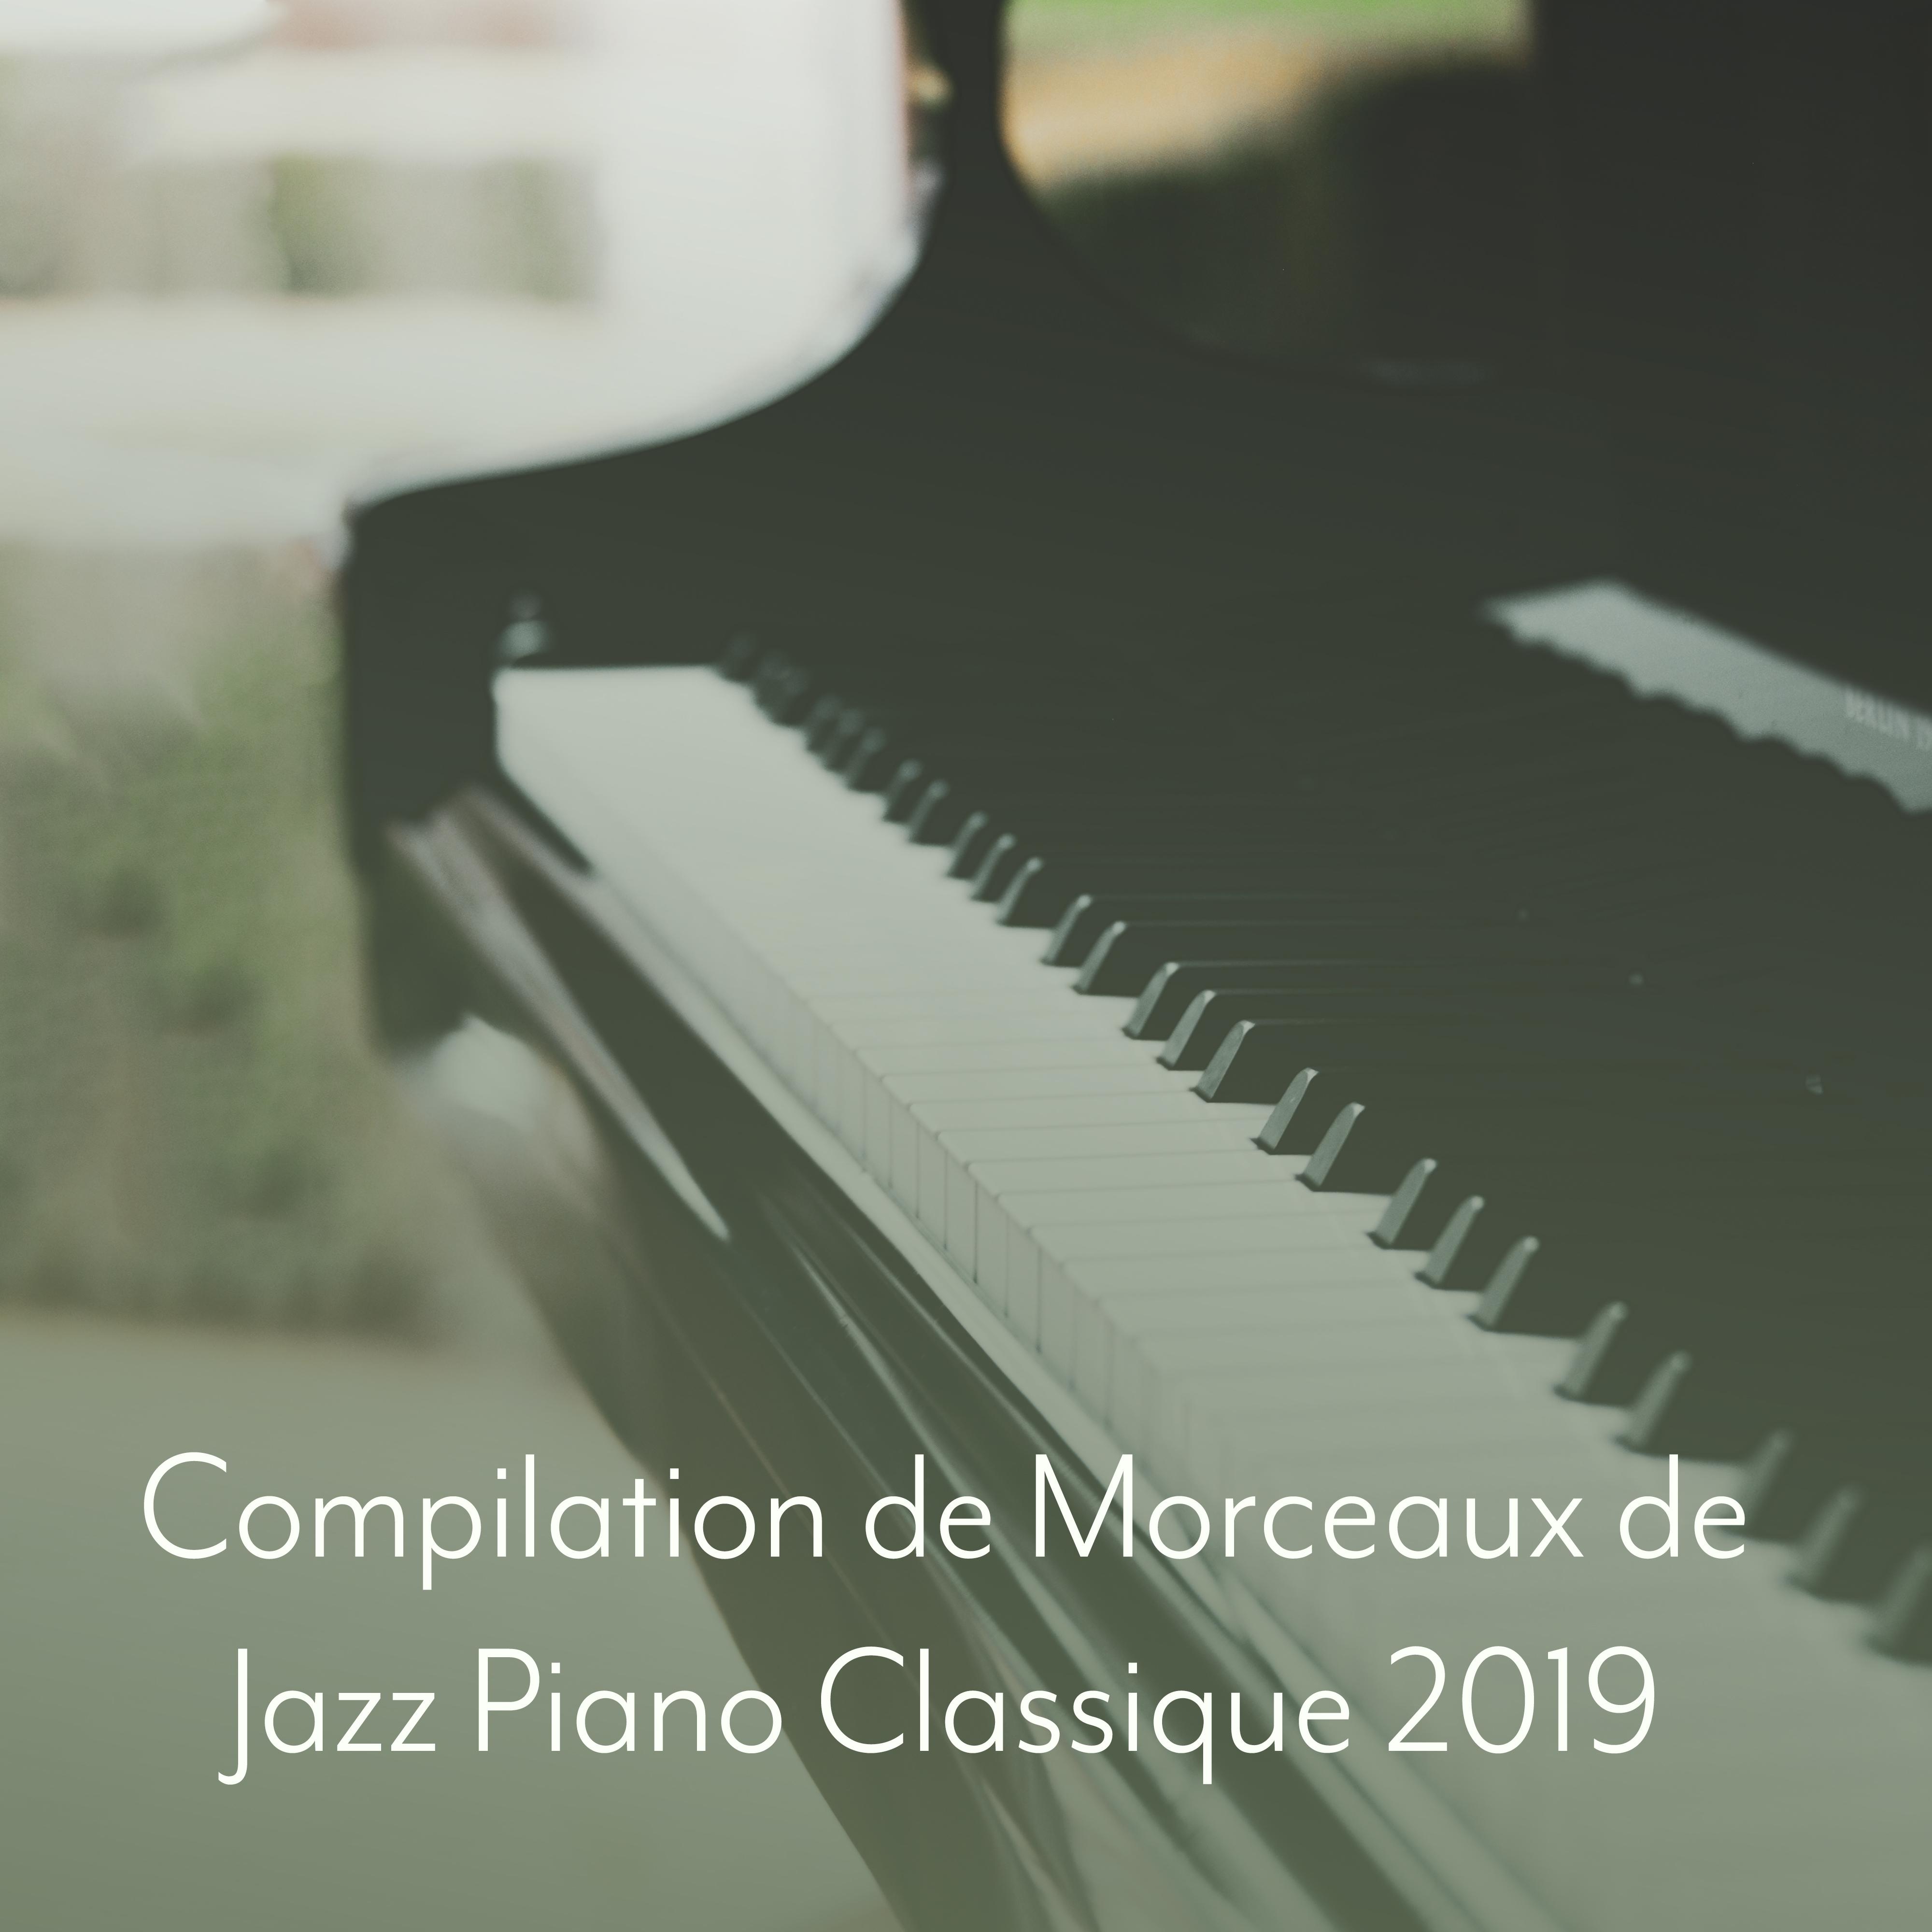 Compilation de Morceaux de Jazz Piano Classique 2019